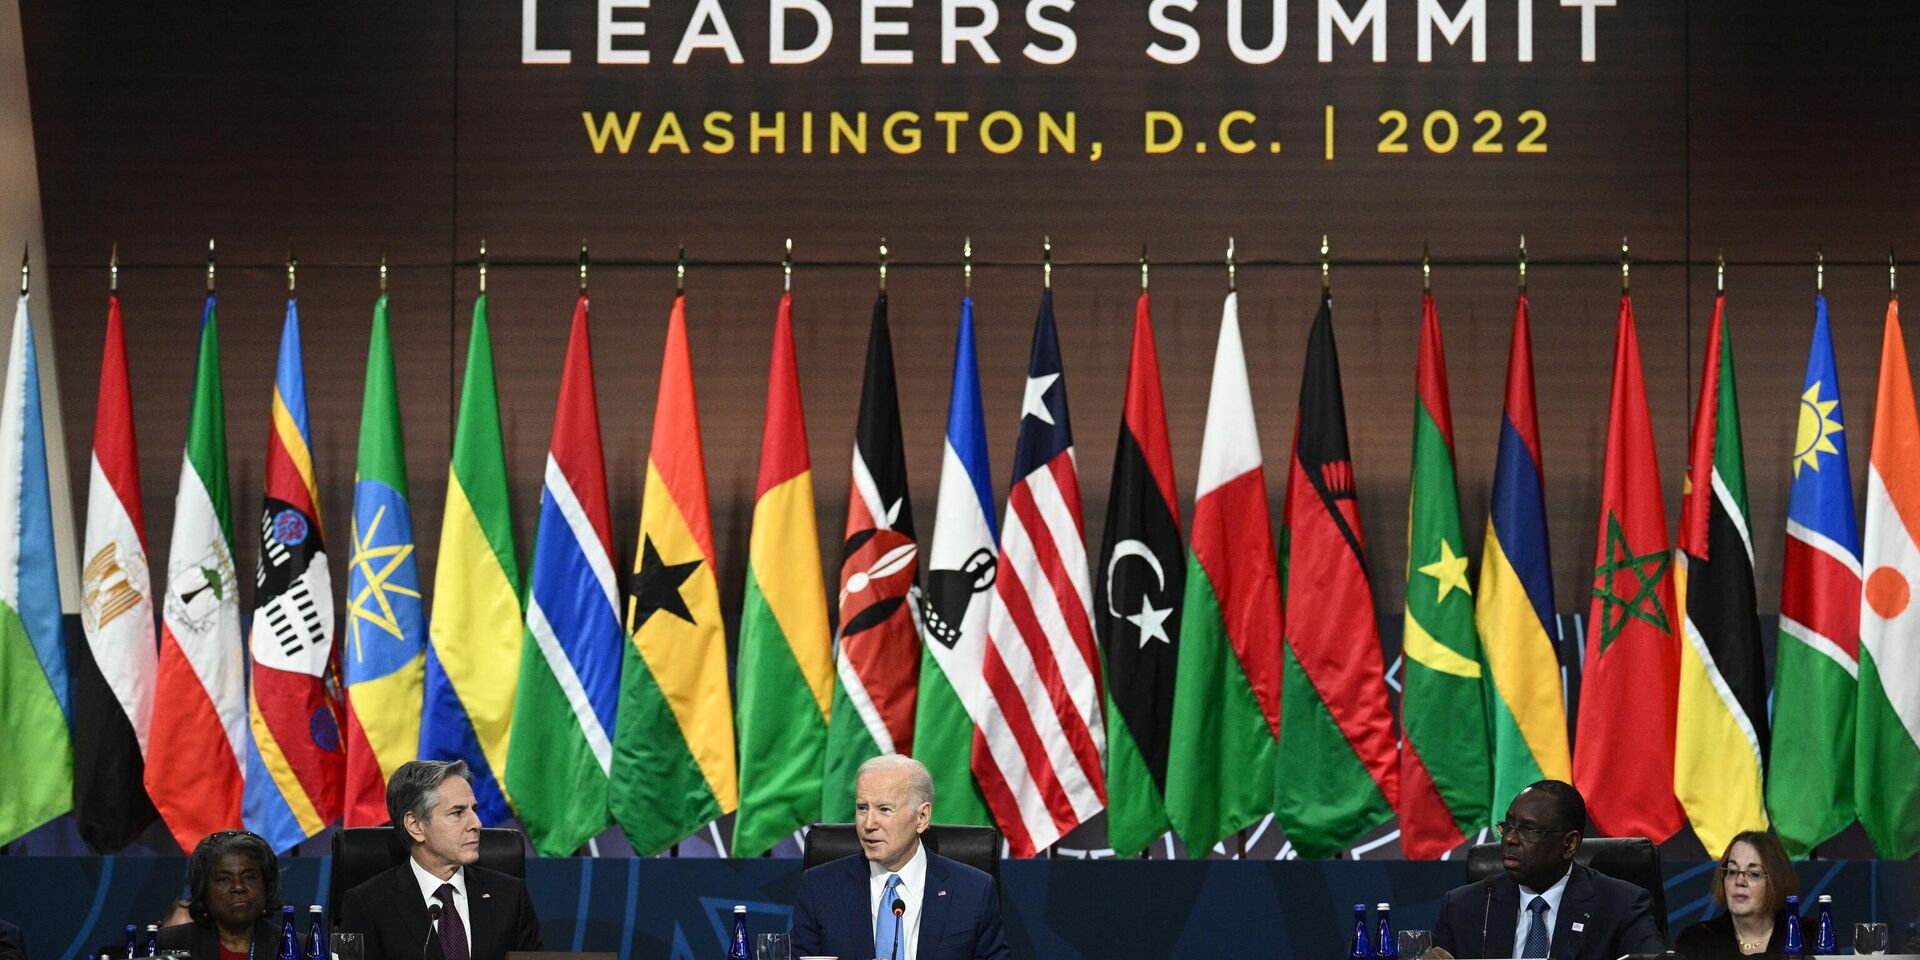 Президент США Джо Байден и госсекретарь Энтони Блинкен во время саммита в Вашингтоне. 15 декабря 2022 года - ИноСМИ, 1920, 18.12.2022